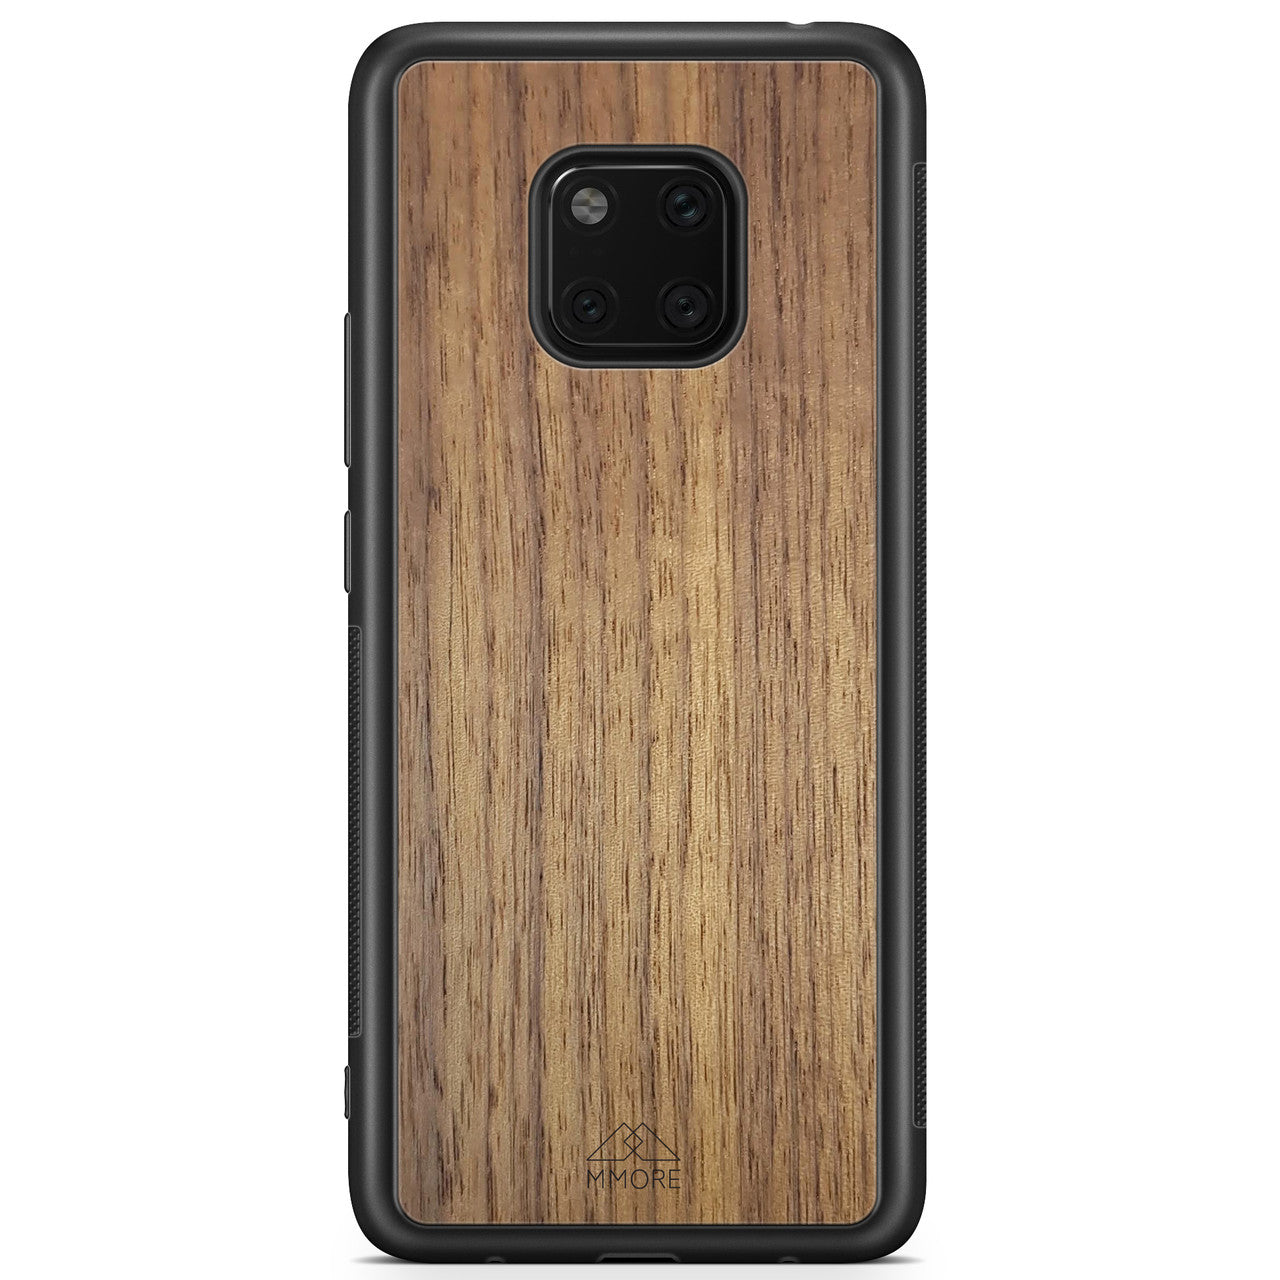 Funda para teléfono de madera real para Huawei Mate 20 PRO en color negro hecha de madera de nogal americano Funda para teléfono de madera de nogal americano Huawei Mate 20 Pro